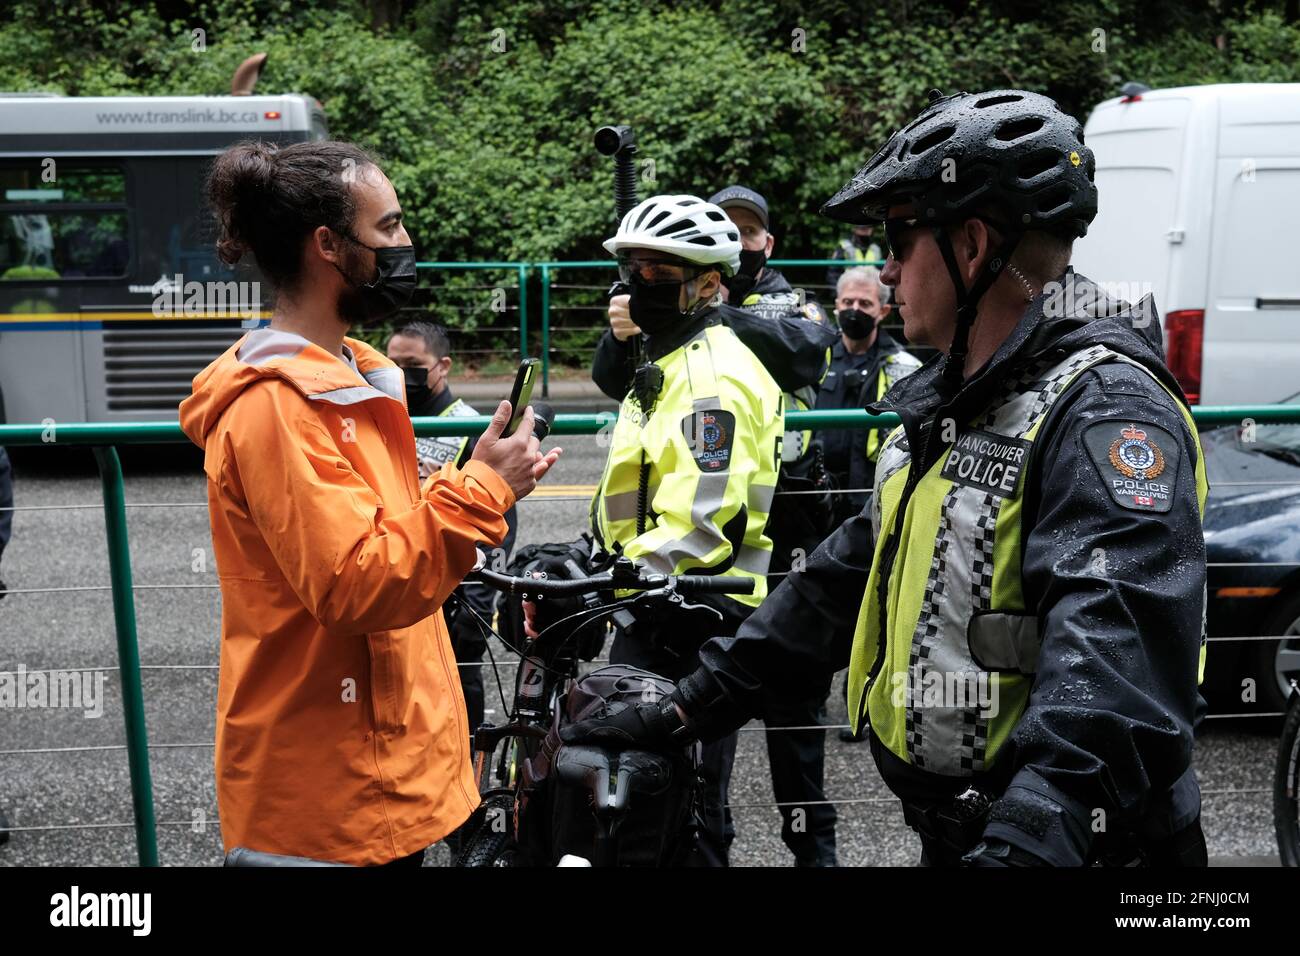 Extinction le protestataire de la rébellion affronte les policiers sur le trottoir à l'intérieur Stanley Park lors d'une manifestation climatique Banque D'Images